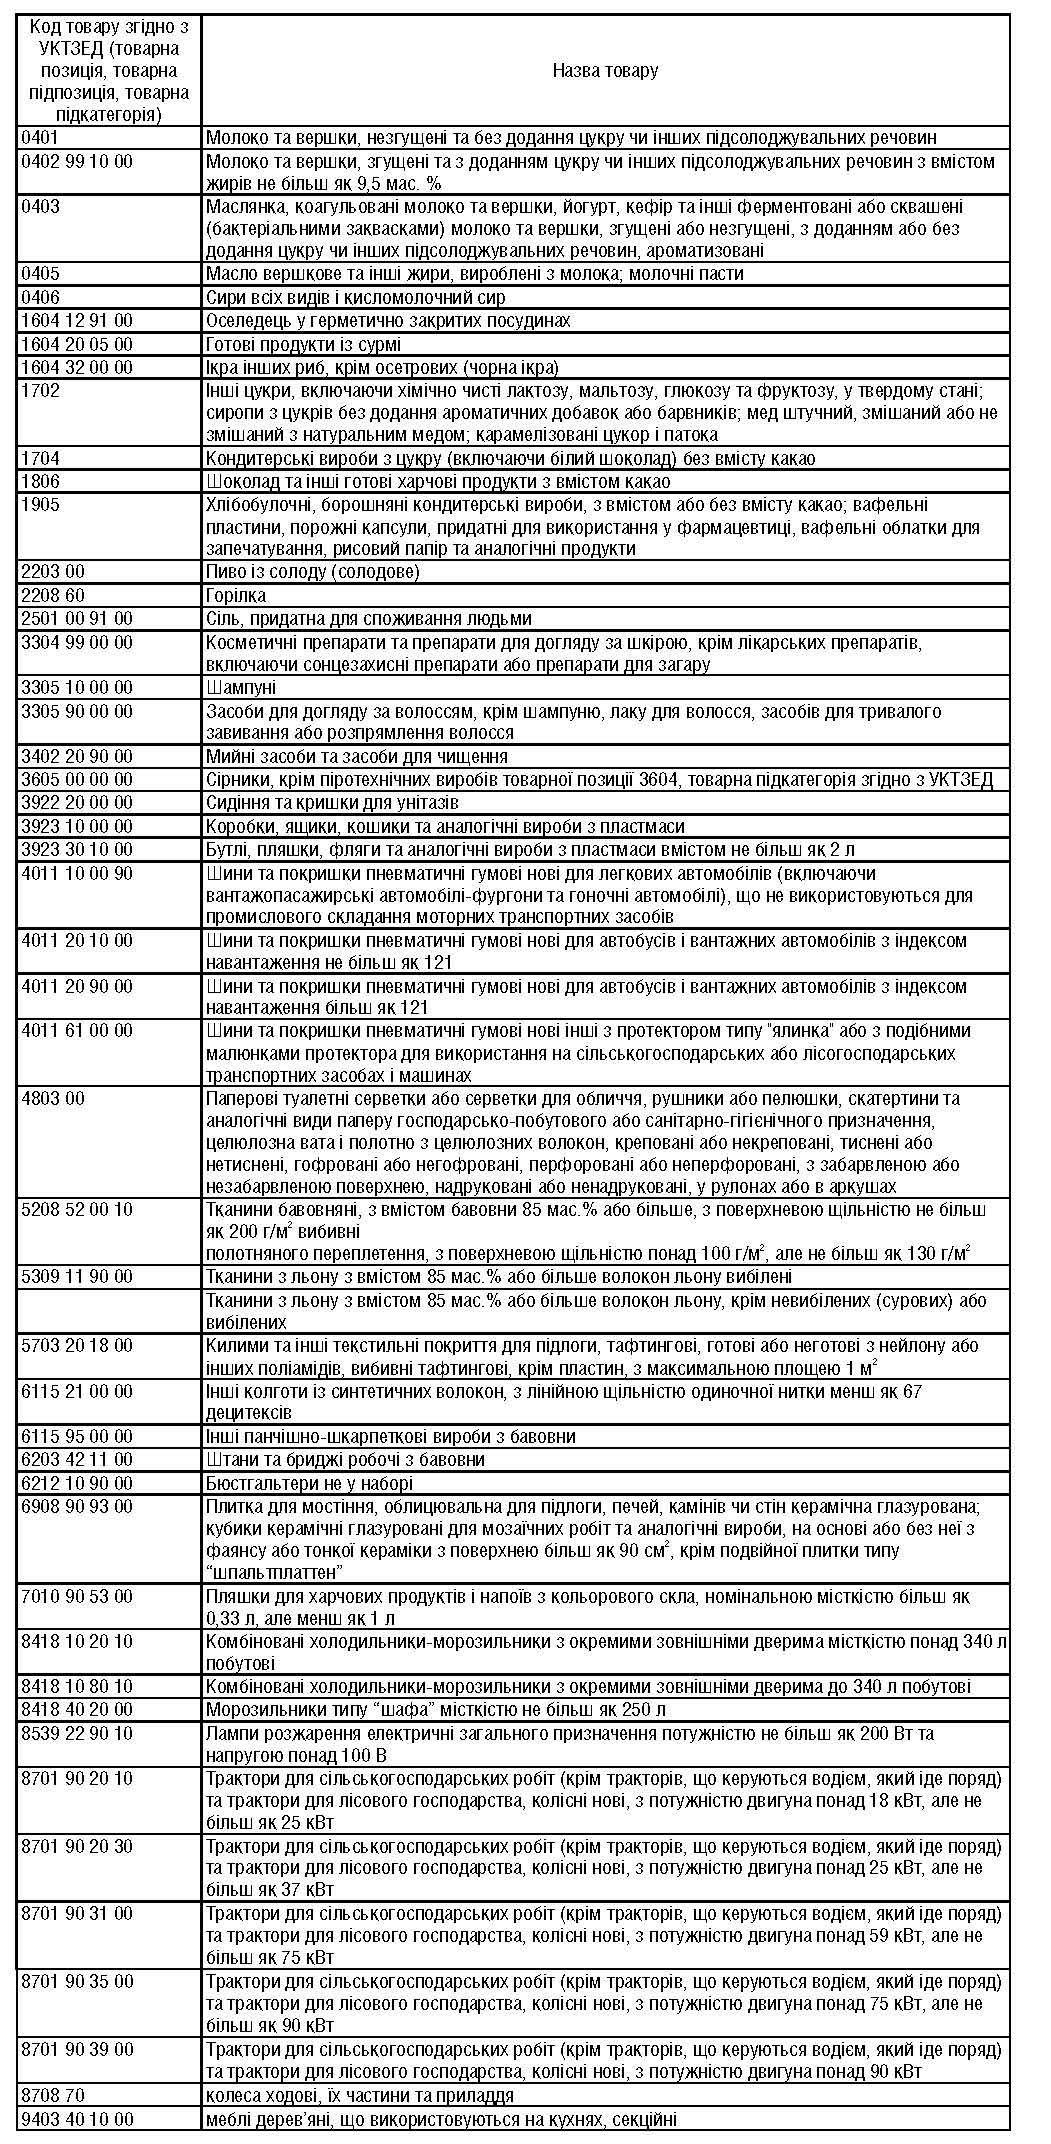 Опис товарів відповідно до класифікації УКТ ЗЕД, щодо яких застосовується спеціальне мито / ukurier.gov.ua